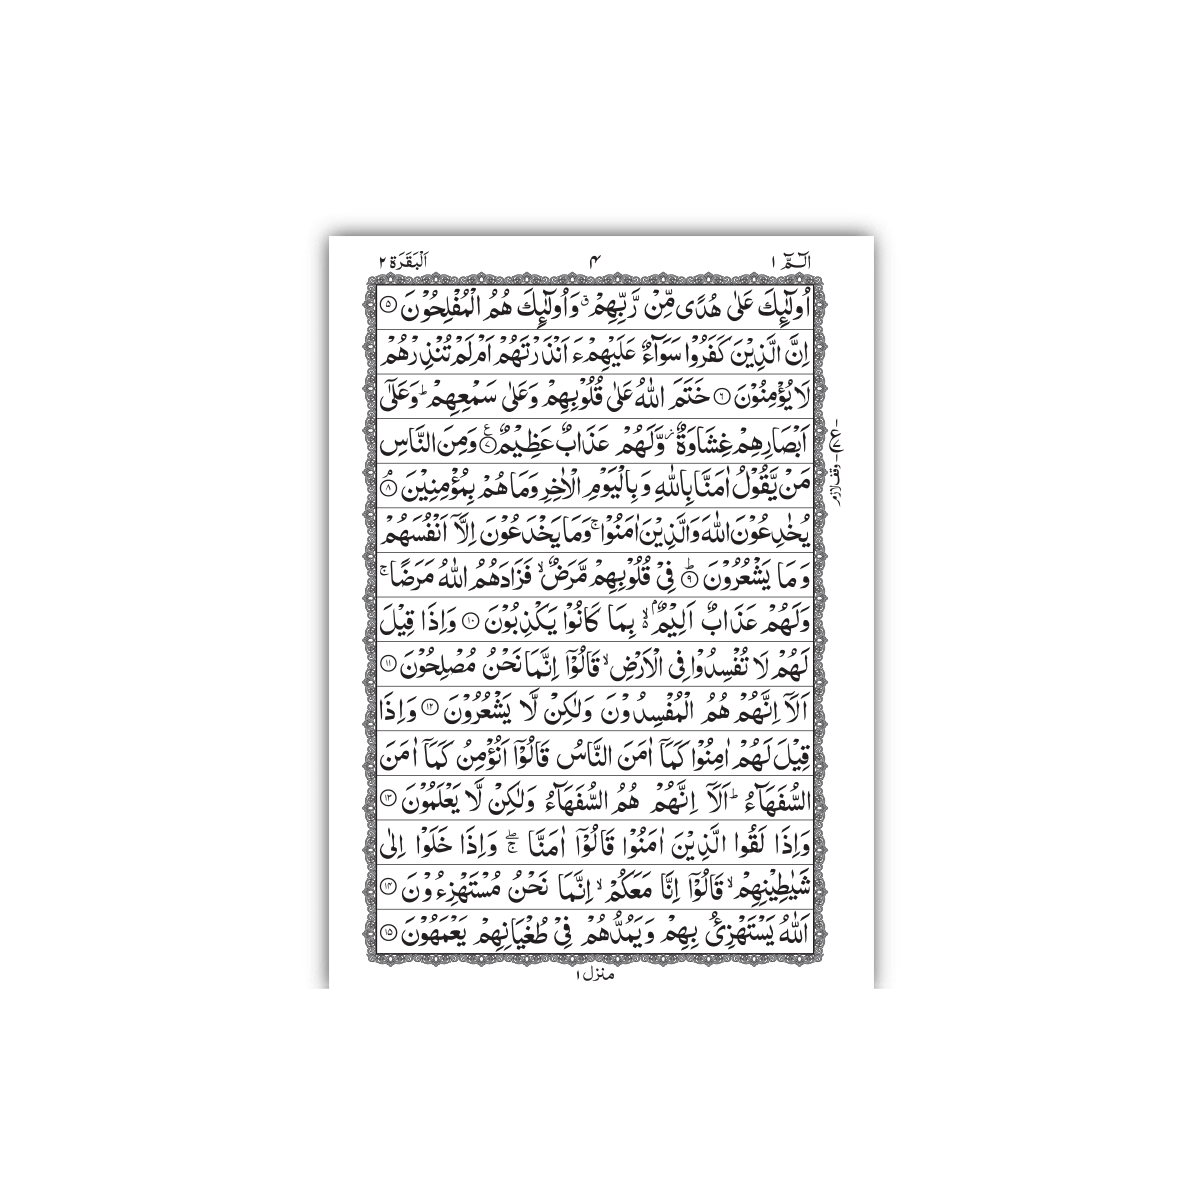 [247/S] Al-Quran-Ul-Kareem In 15 Lines (Without Translation) - Pocket Size